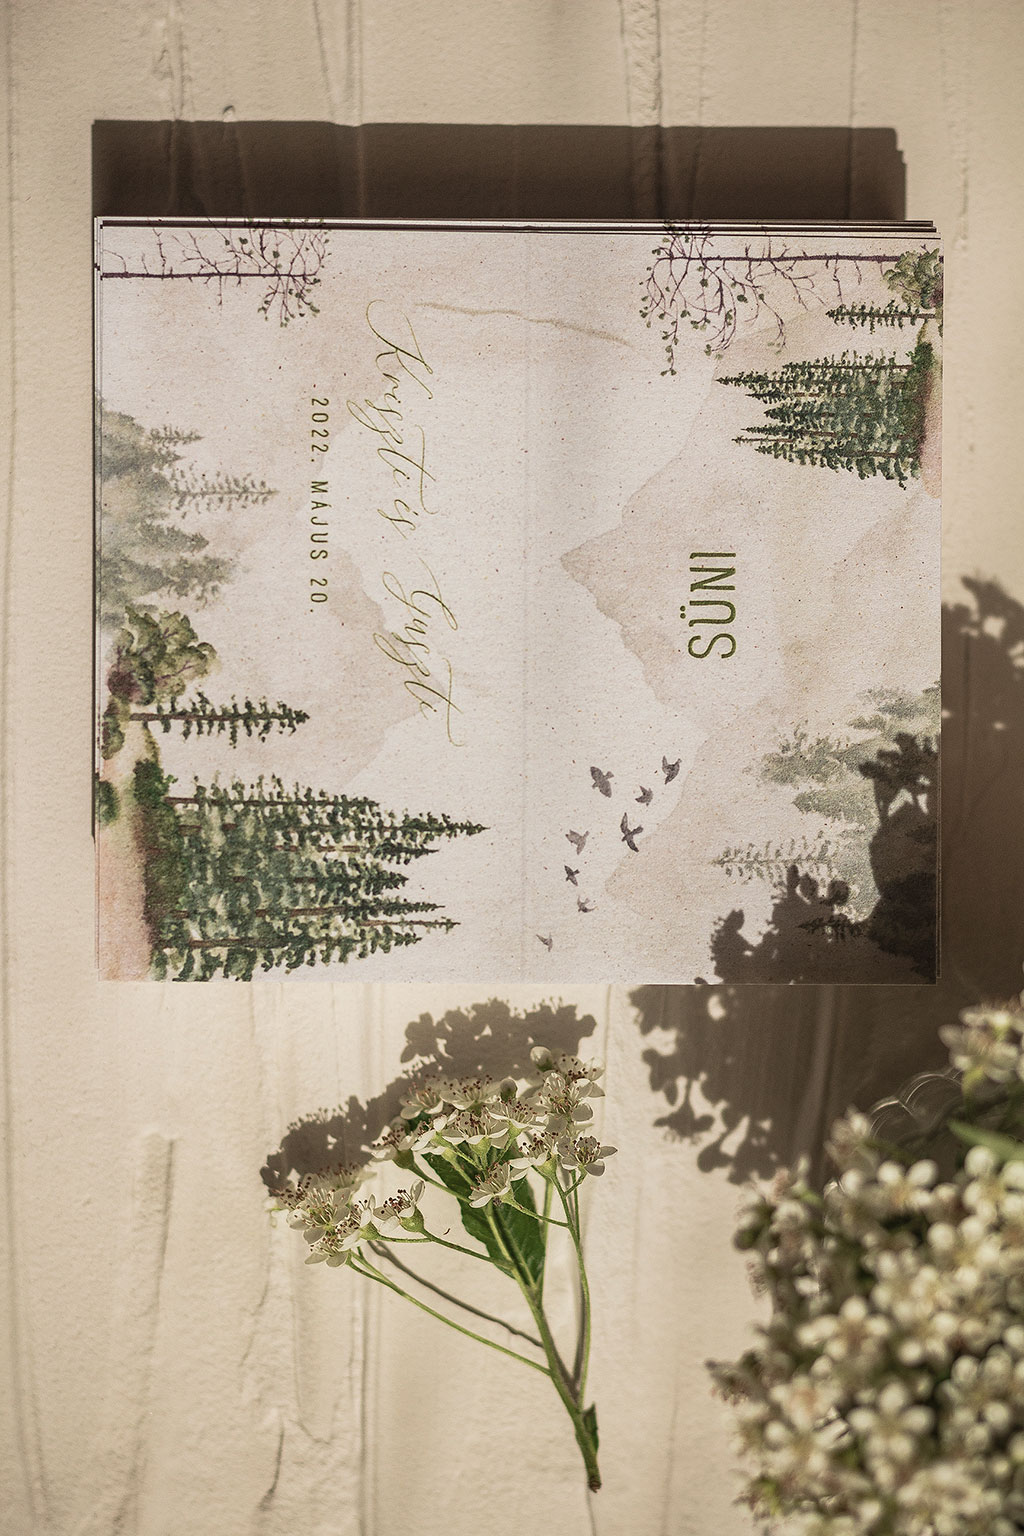 hajtott ültetőkártya világos erdőgrafikával – bármilyen esküvői dekorációhoz sok választható papíron akár aranyozva is, gyors átfutással, kedvező áron